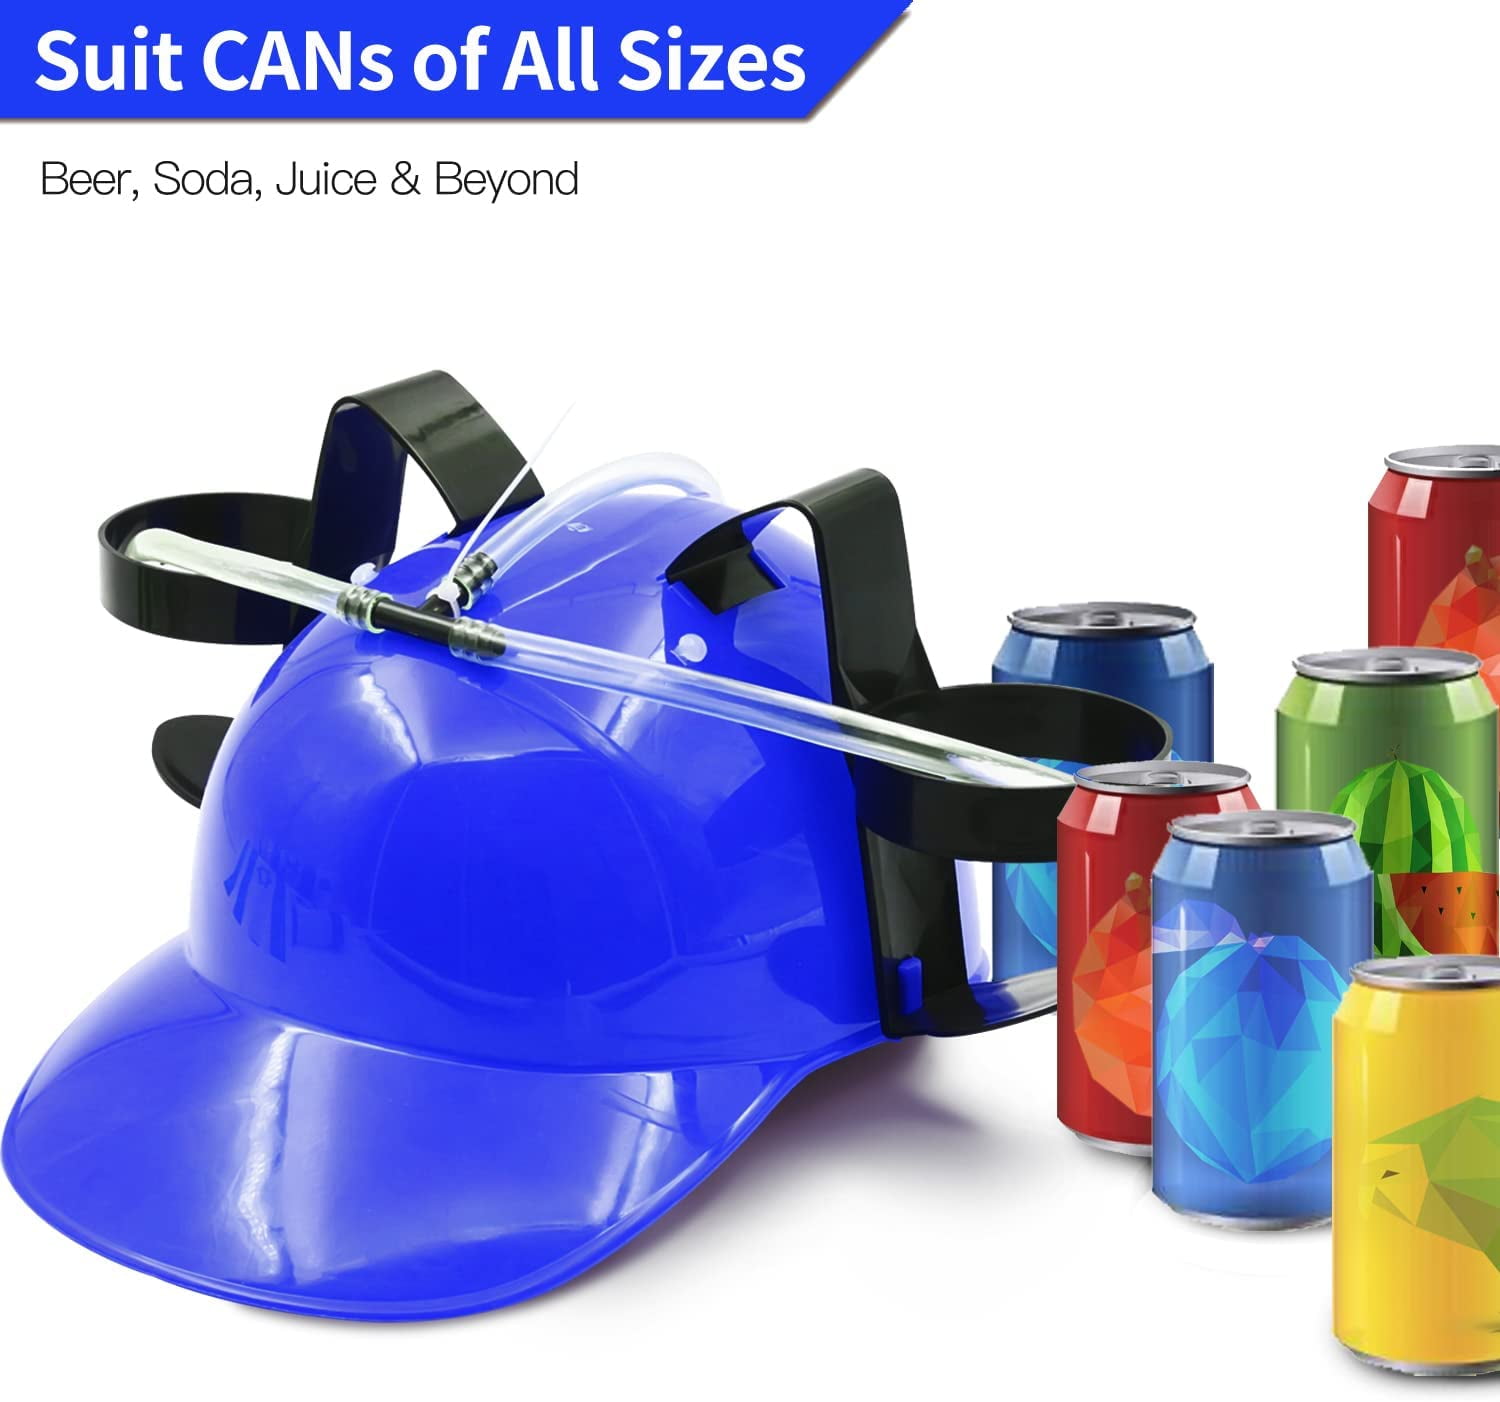 Udtømning gå træk vejret Drinking Helmet - Adjustable Can Holder Cap Drinker Favor Hat - Straw for  Beer Soda - Party Fun Beverage Gadgets (Blue) - Walmart.com